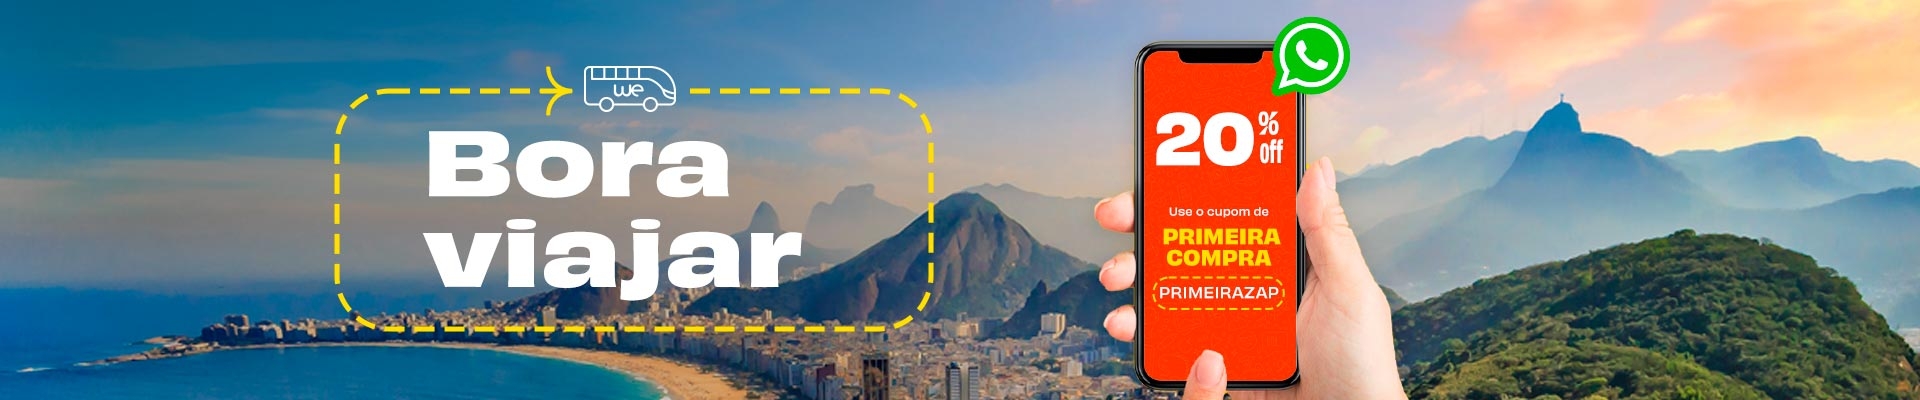 Bora viajar! 20% off na sua primeira compra por whatsapp usando o cupom PRIMEIRAZAP